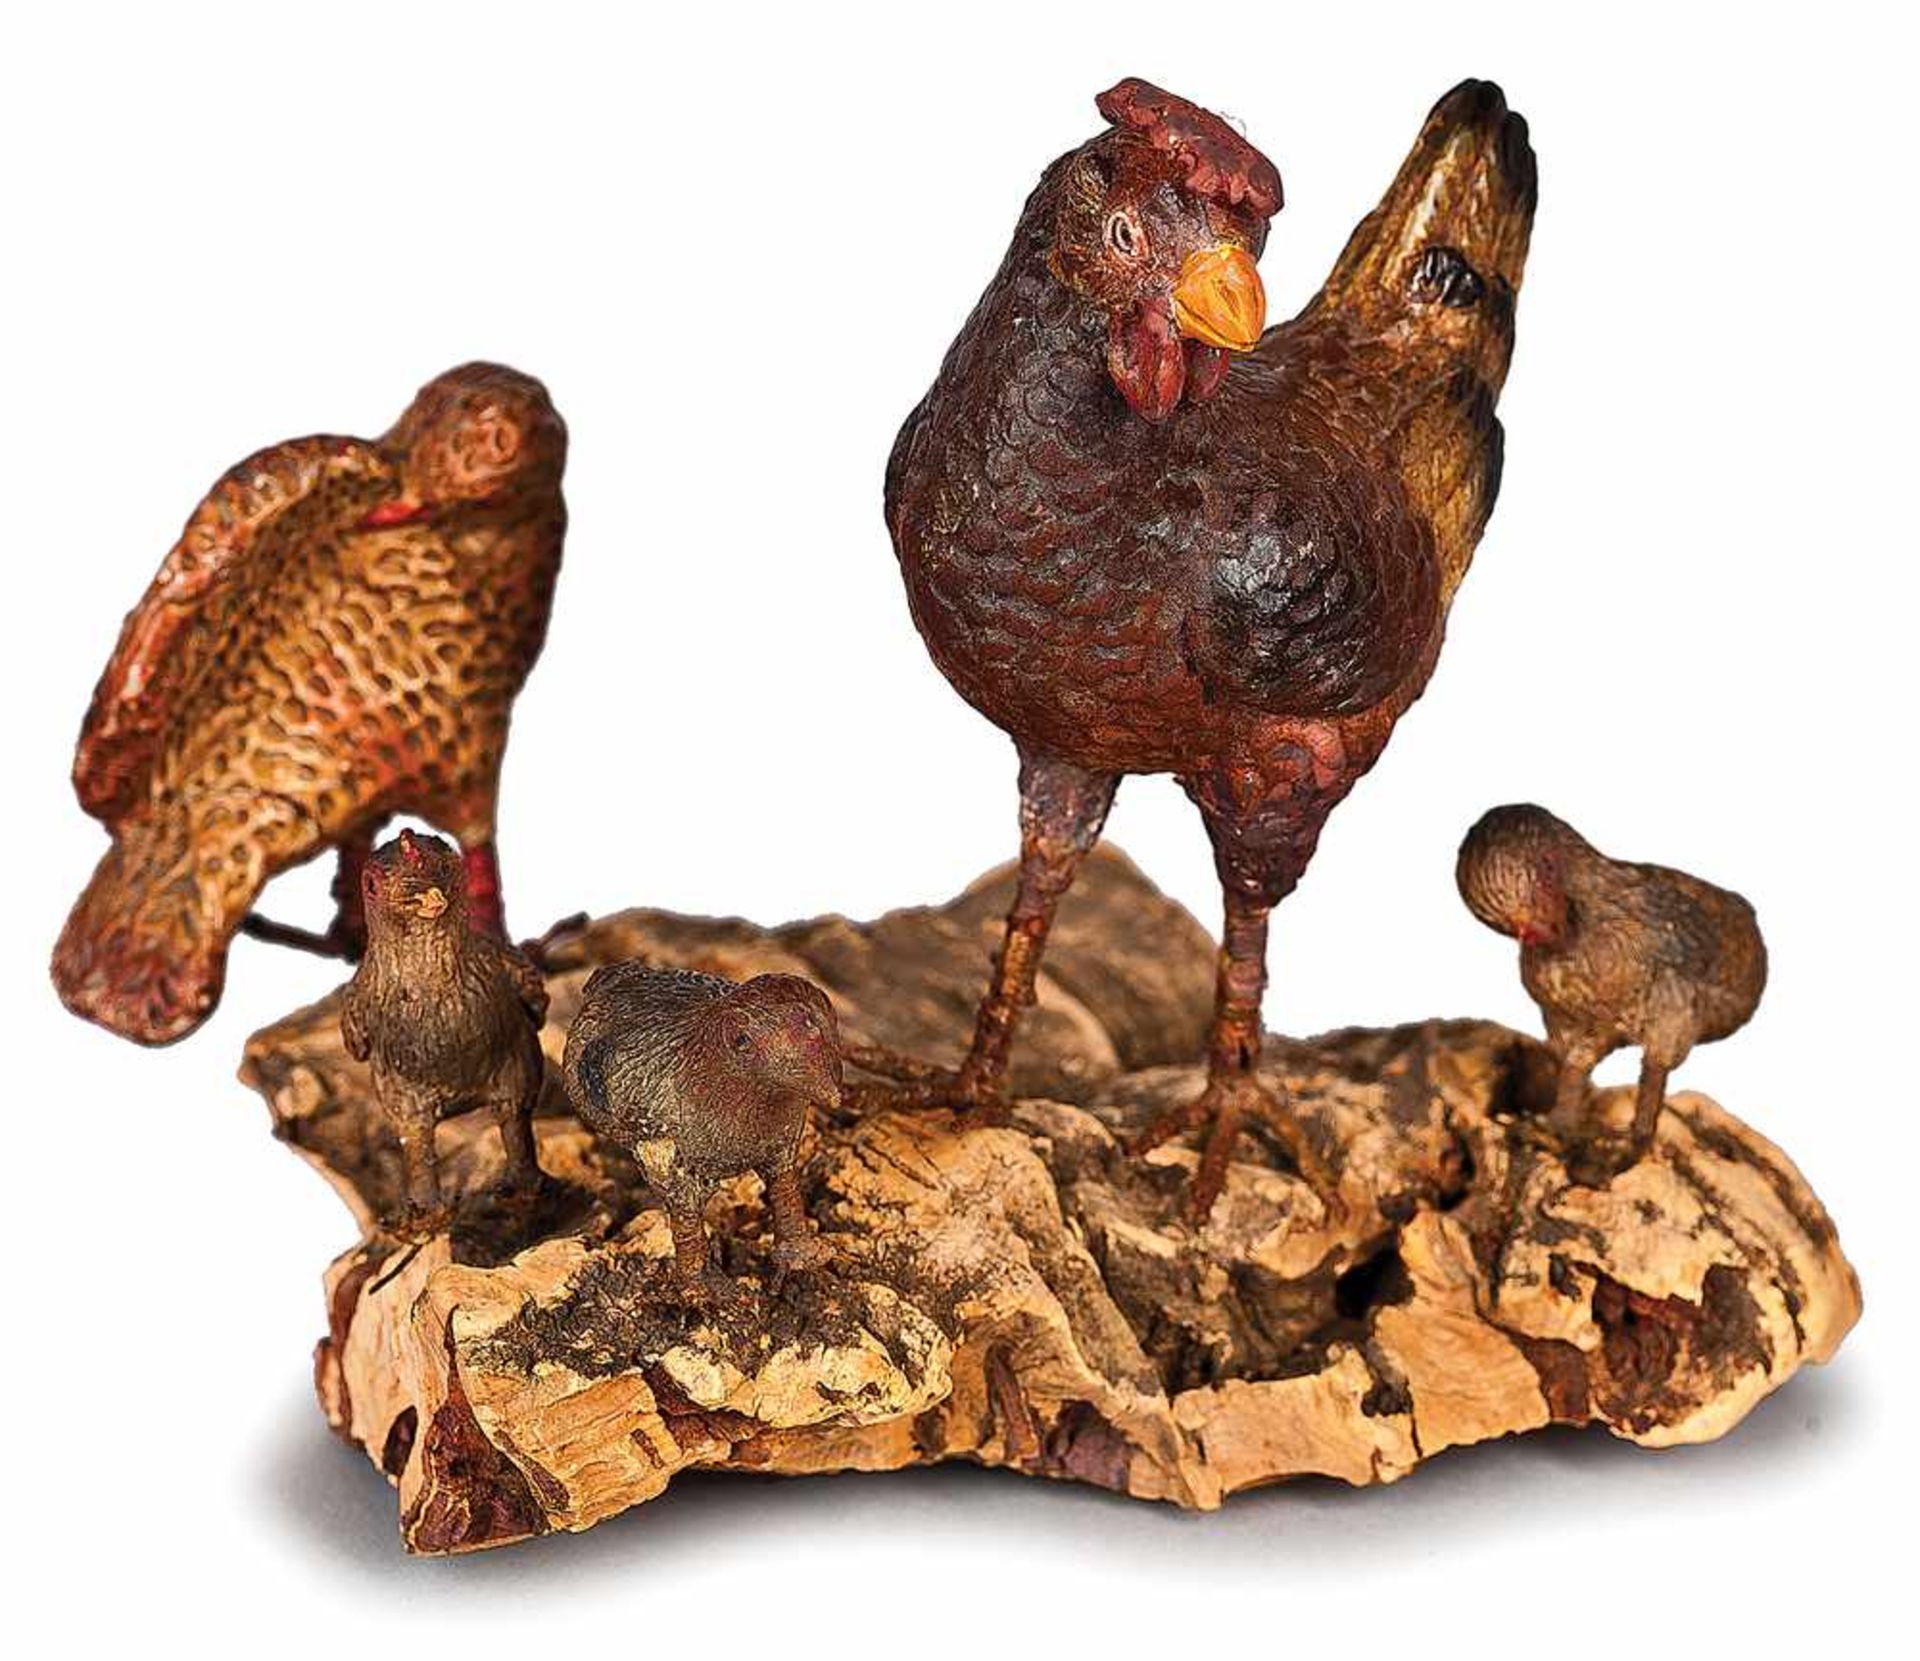 GRUPPO DI PENNUTI | PENNUTI GROUP Gruppo di pennuti, composto da una gallina in terracotta policroma